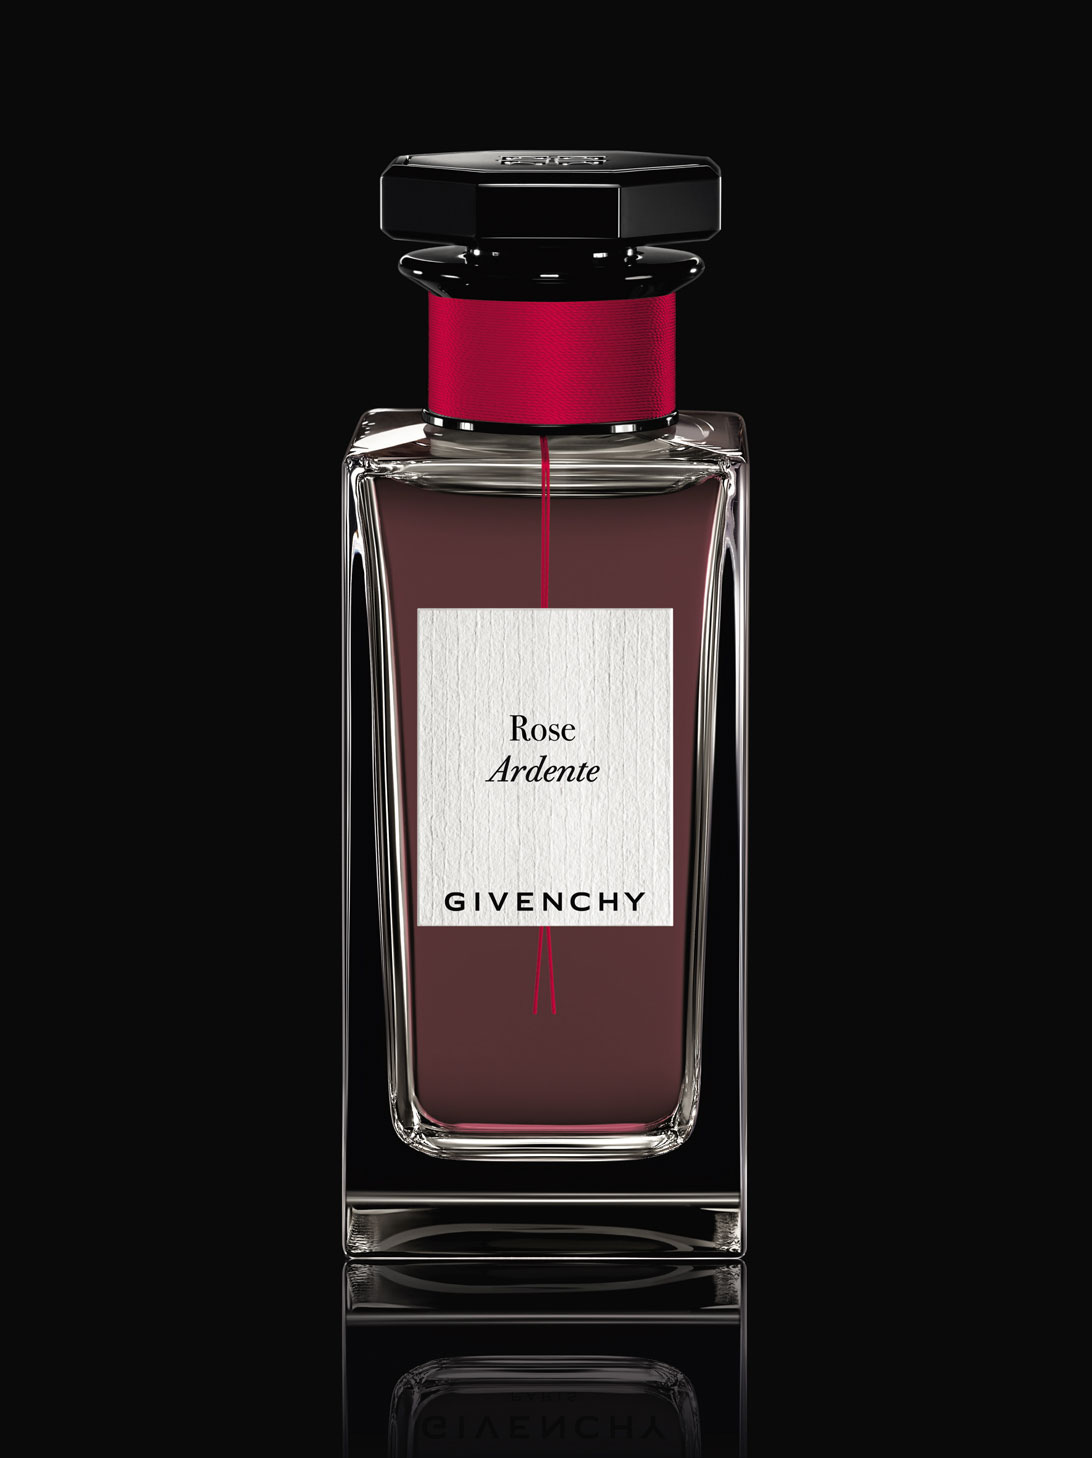 givenchy rosee perfume